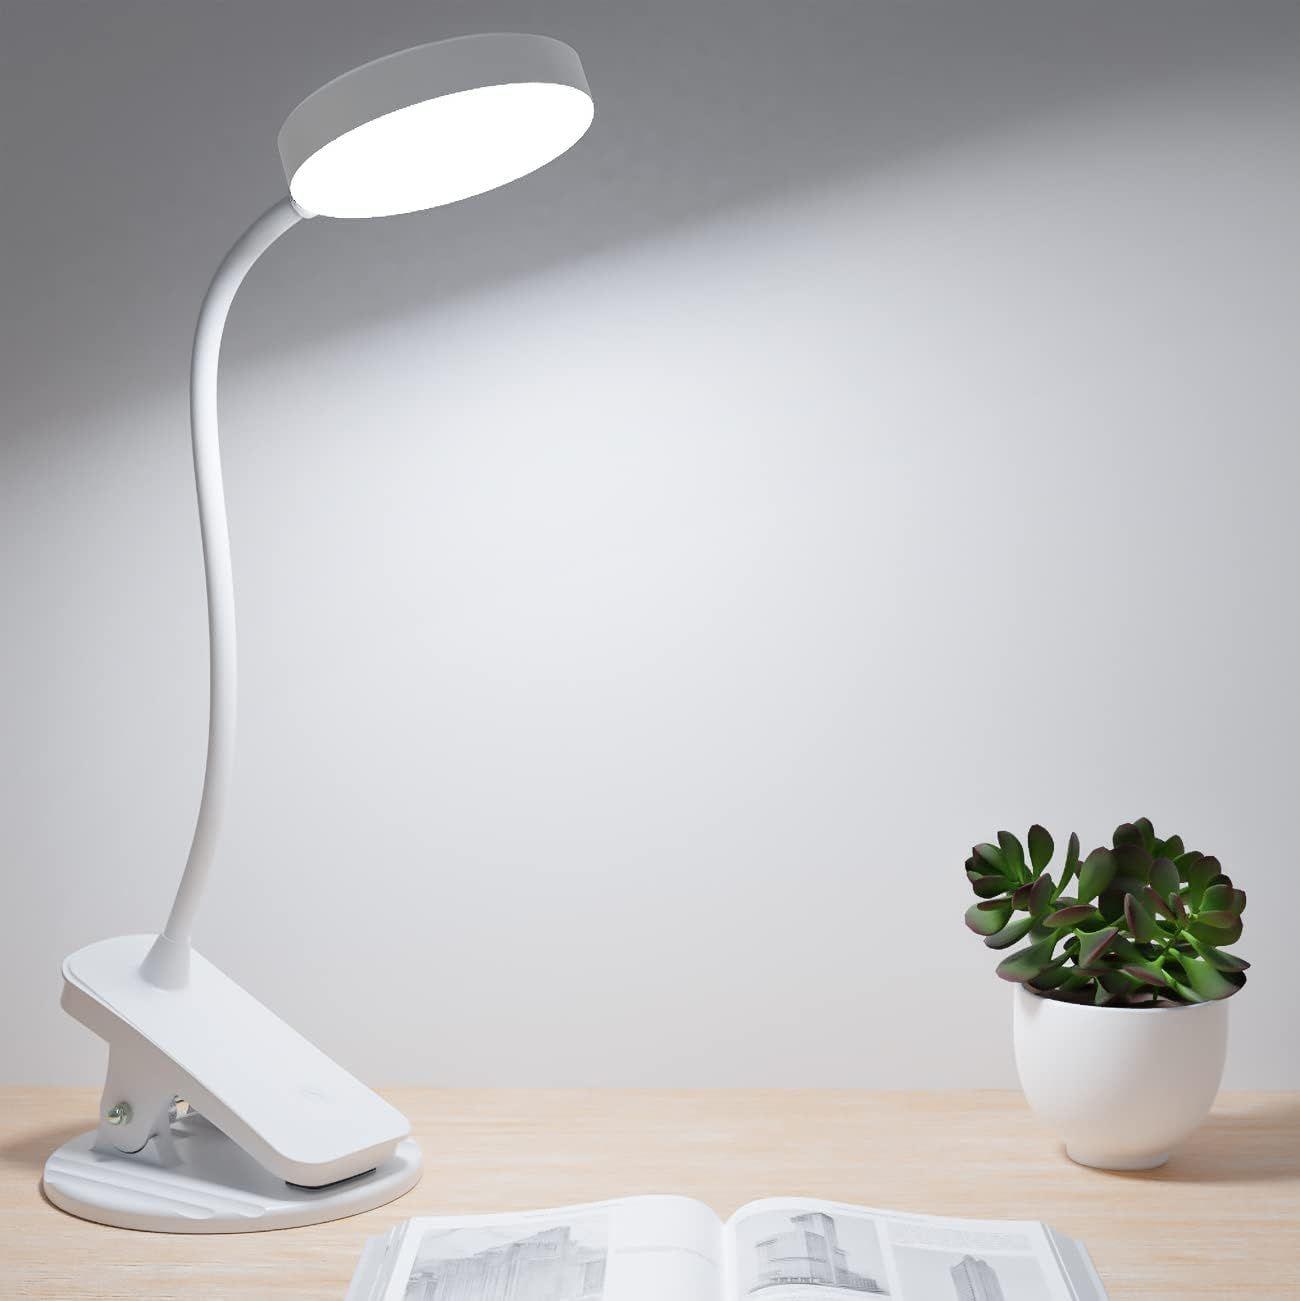 Lampe de bureau GENERIQUE Lampe de table led flexible support bureau usb  clip lit étude livre lecture ampoule d'alimentation - noir